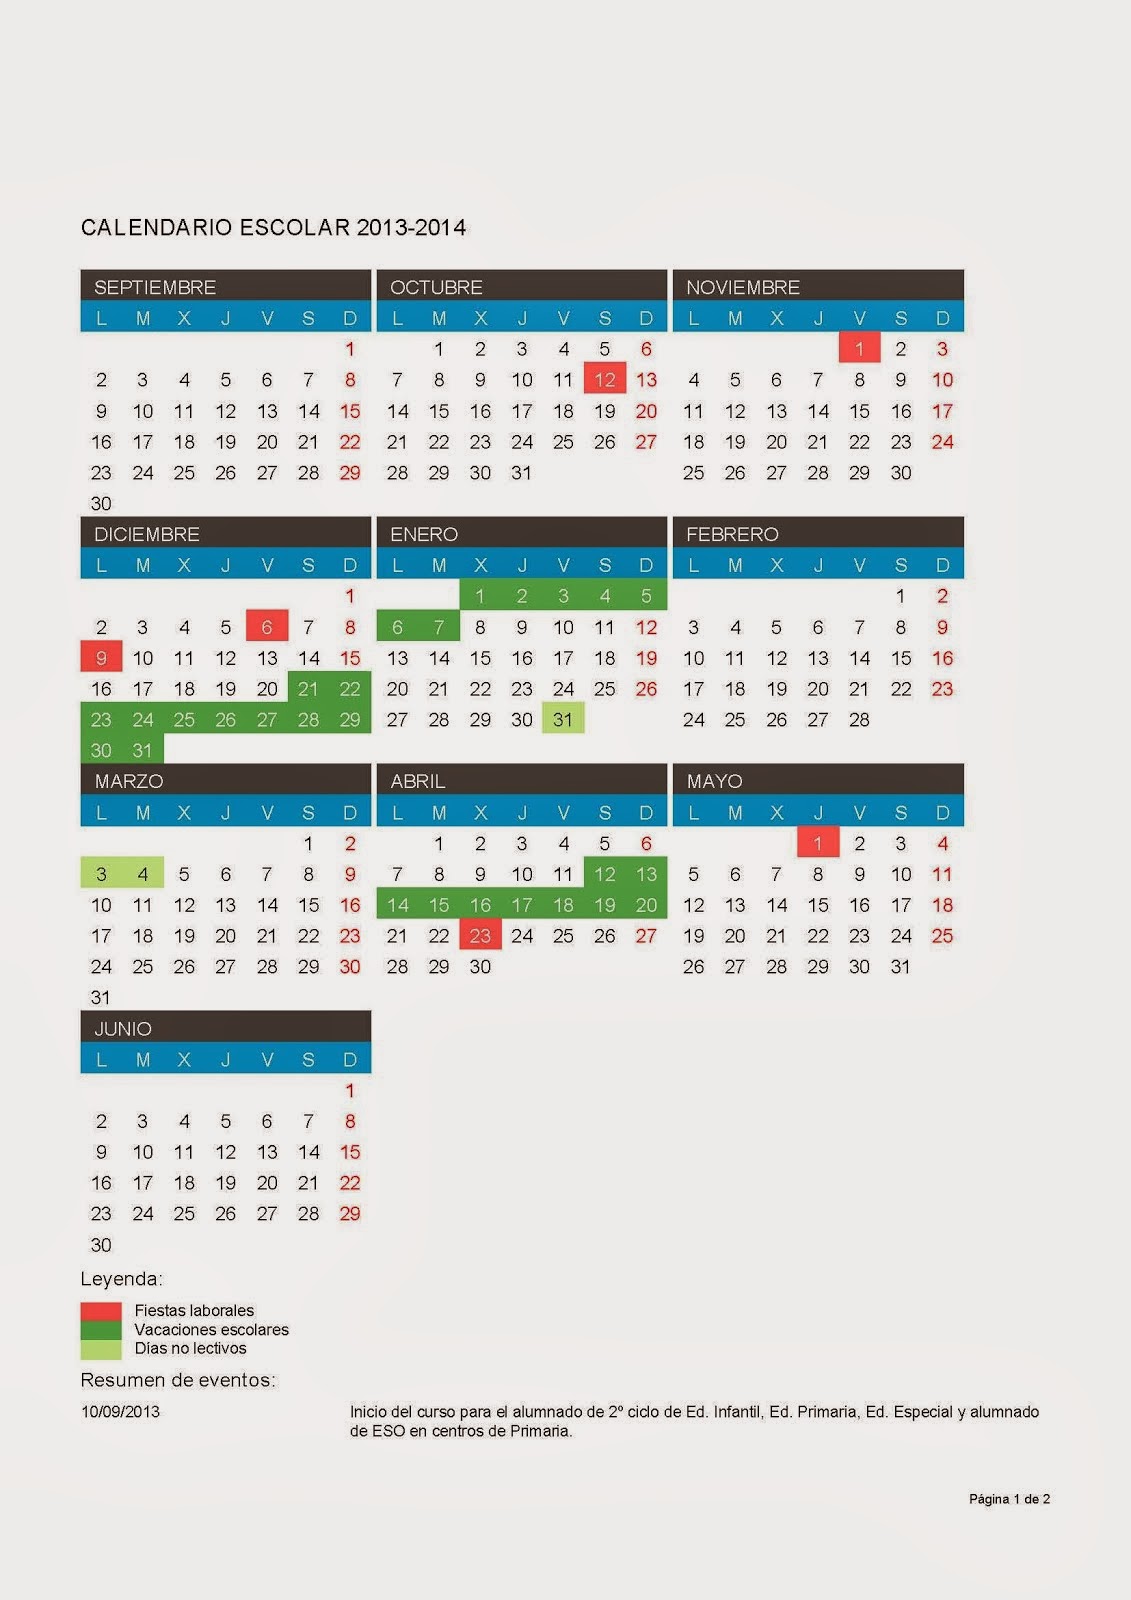 Calendario escolar